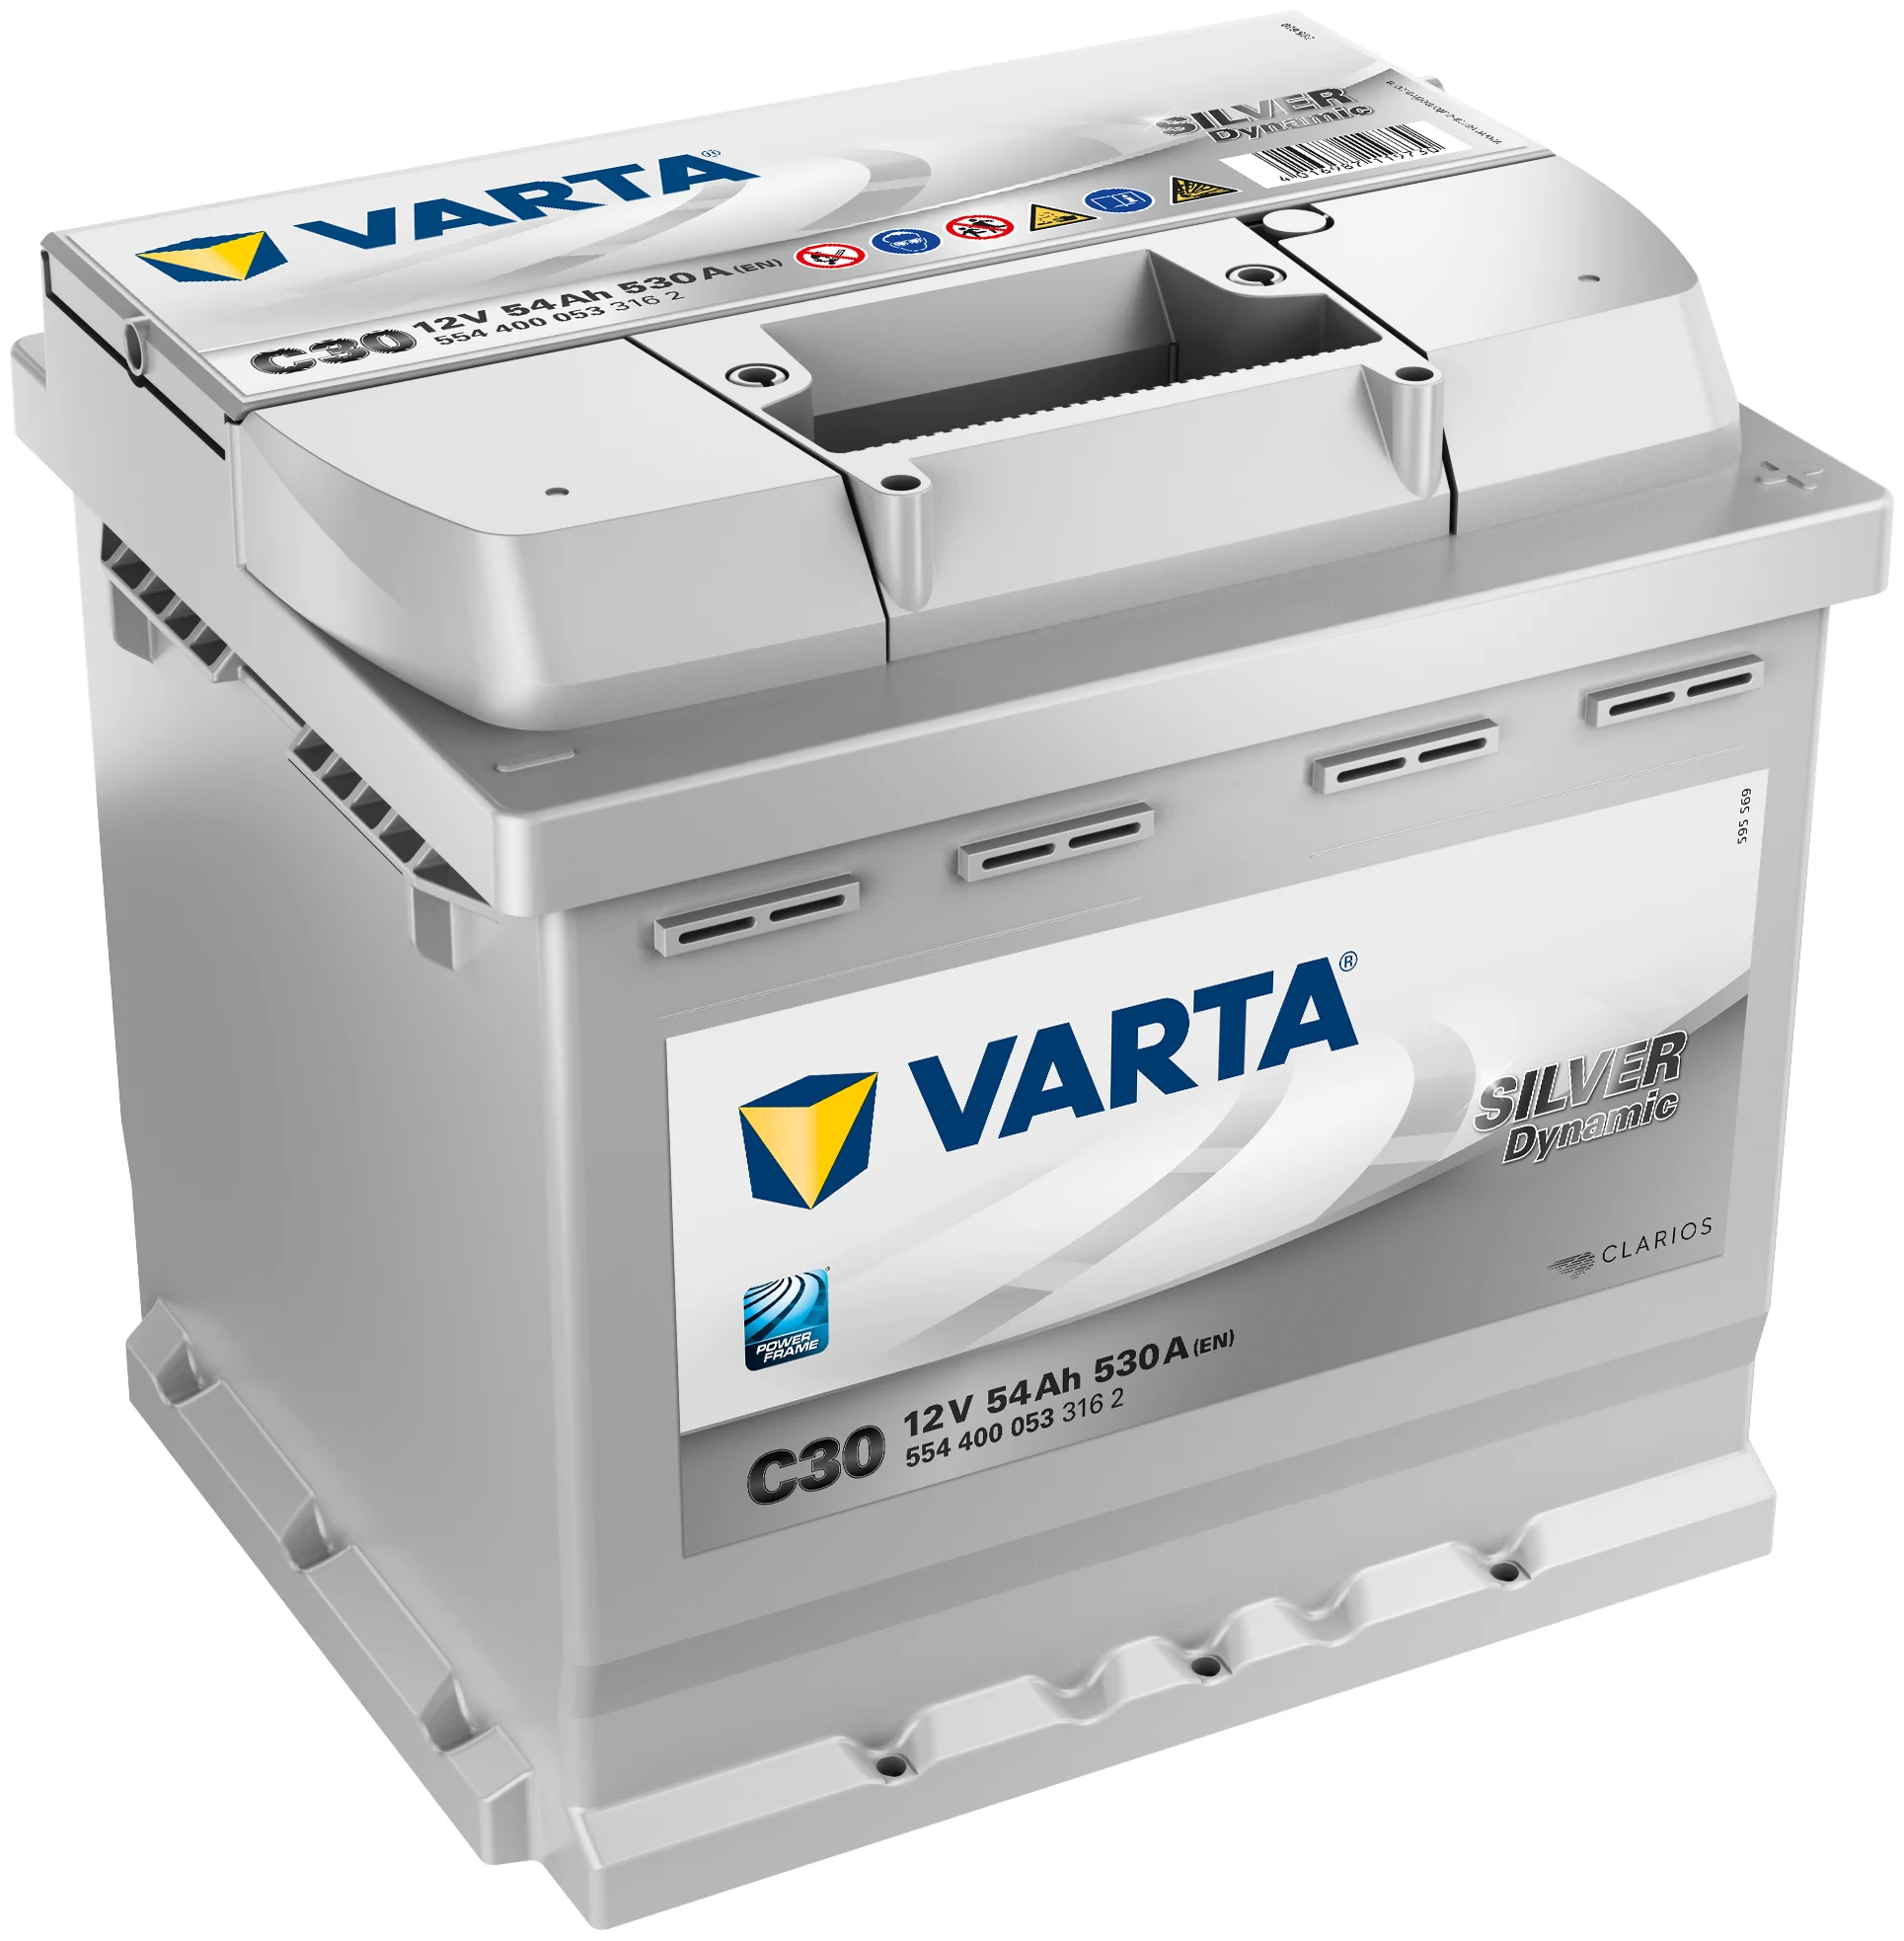 Varta Silver Dynamic 12В 54А/ч 530А обратная полярн. стандартные клеммы C30